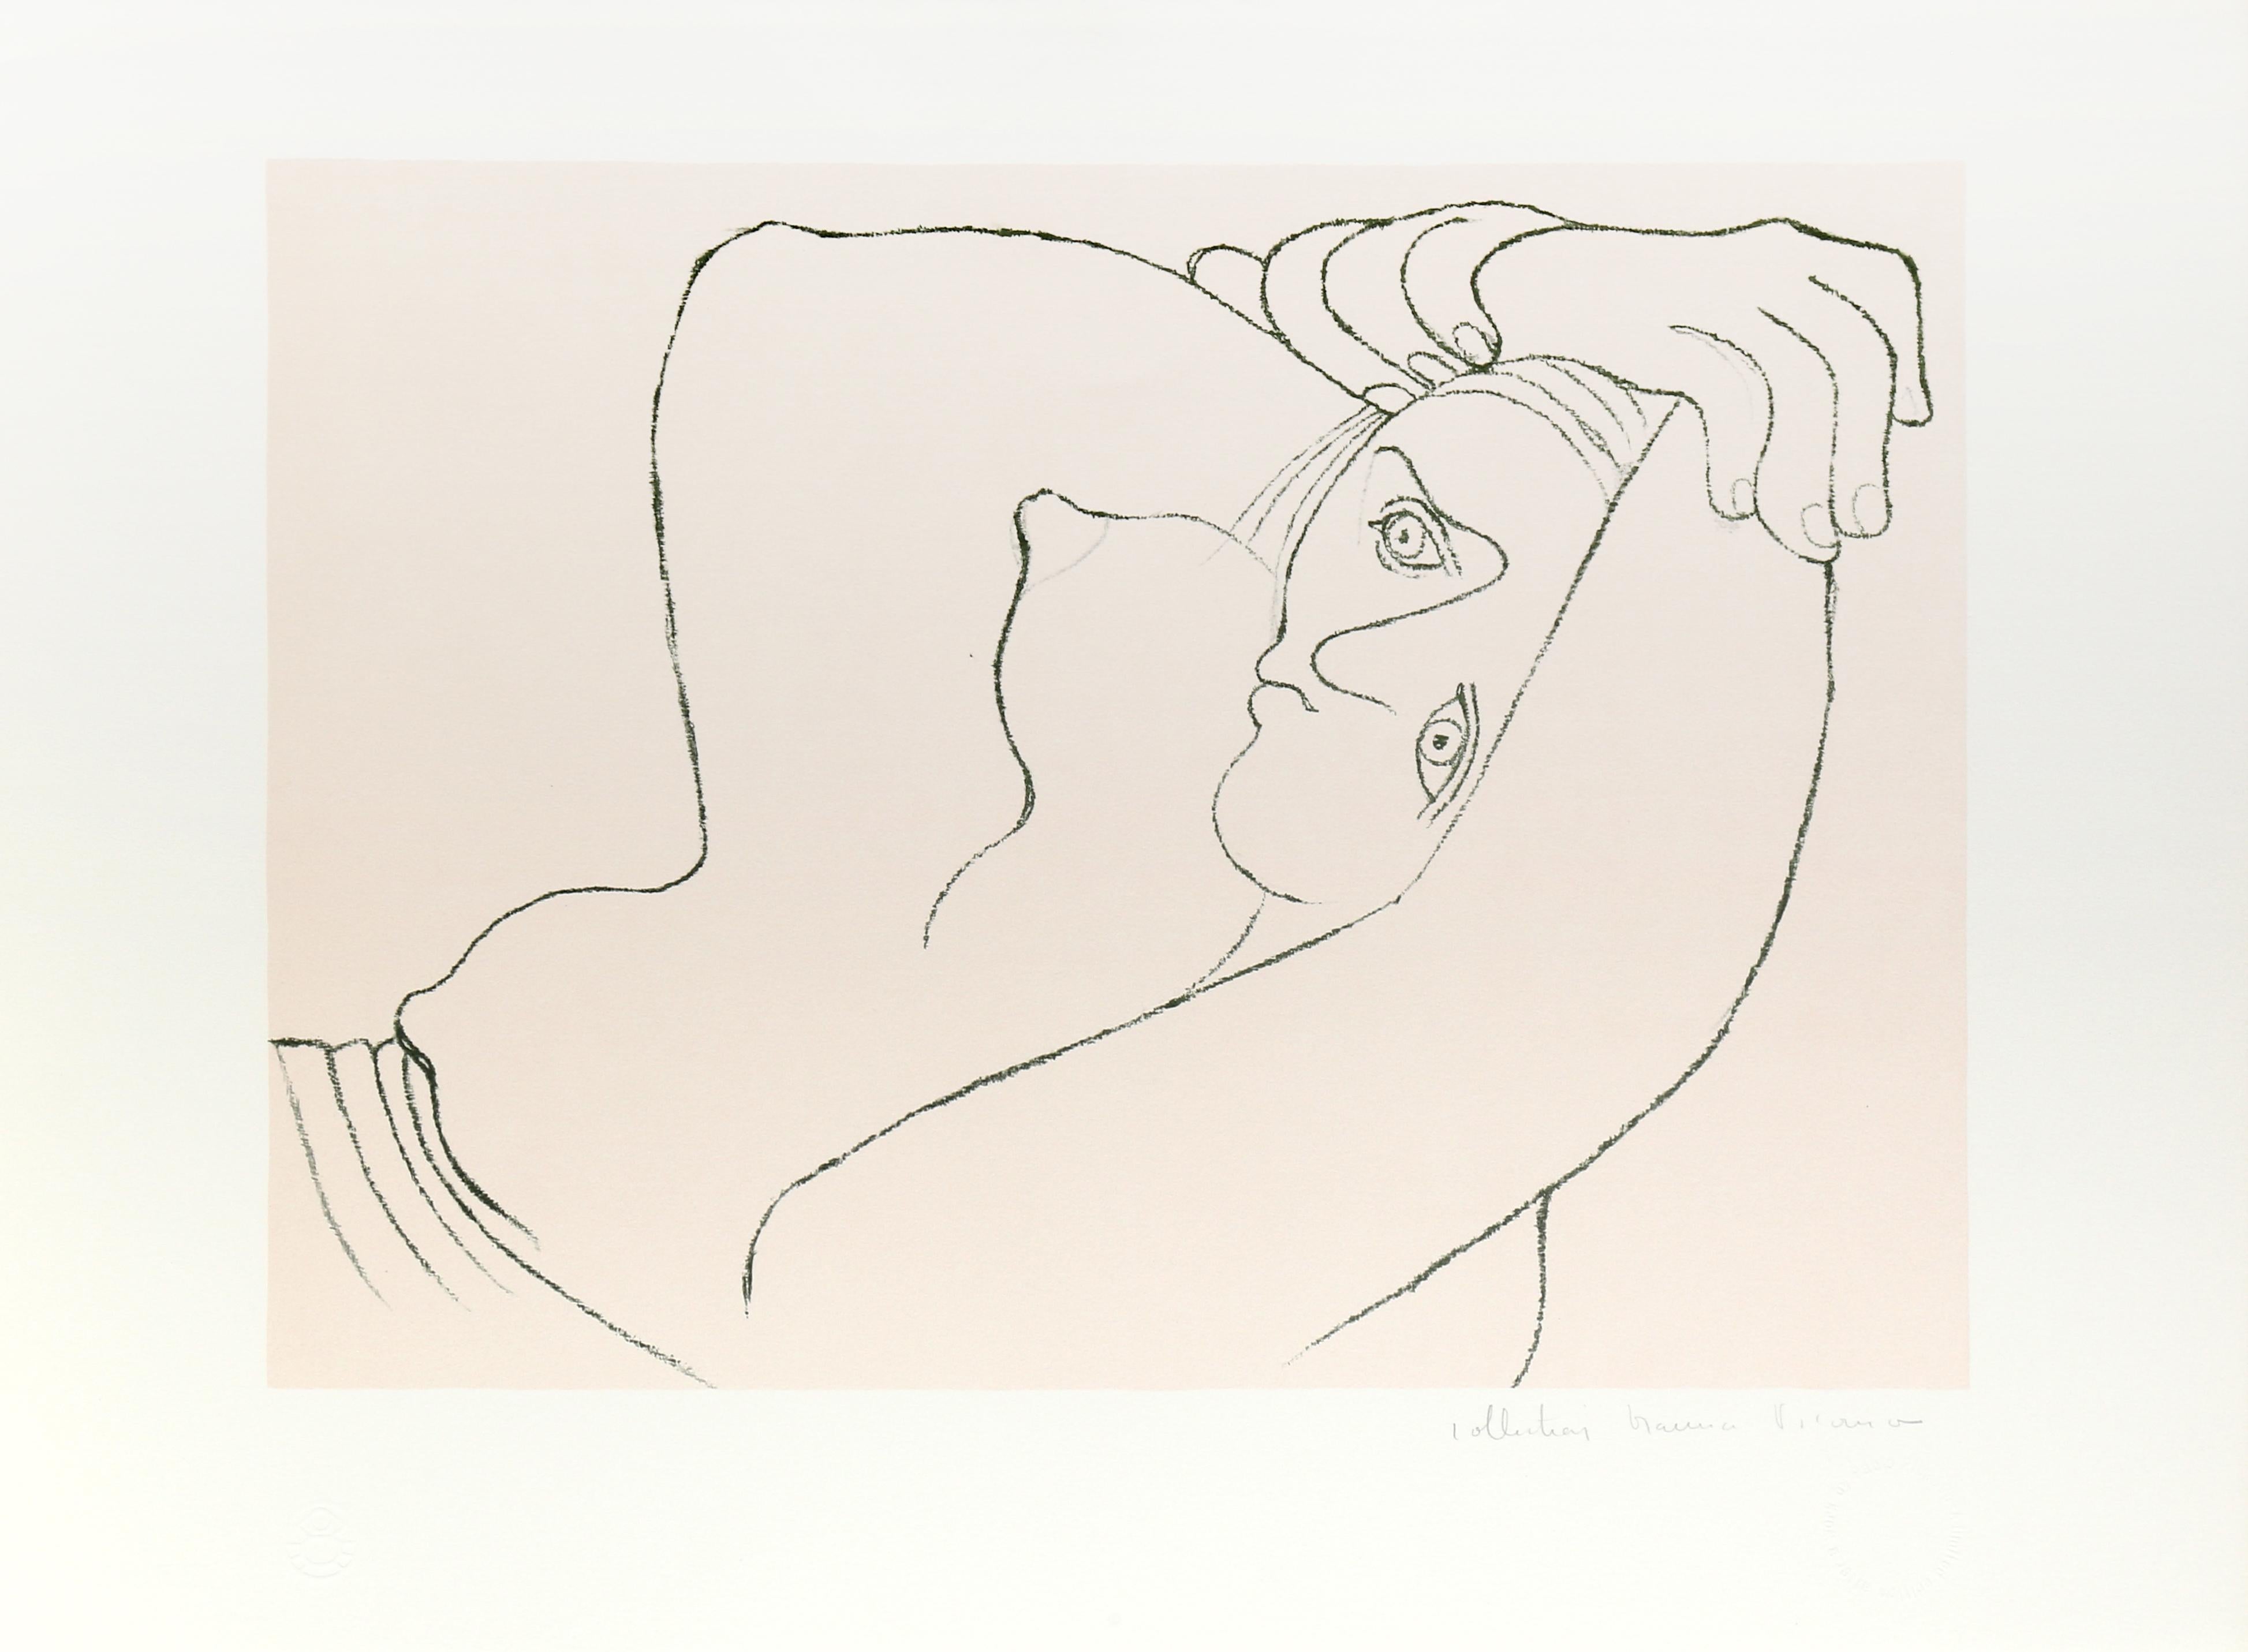 Die in sanften Grau- und Gelbtönen schattierte Frau auf dem Druck von Pablo Picasso ist in einem kubistischen Stil mit fließenden Linien und Formen dargestellt. Die Arme sind über den Kopf gestreckt, während sie sich ausruht. Das Oberteil der Frau